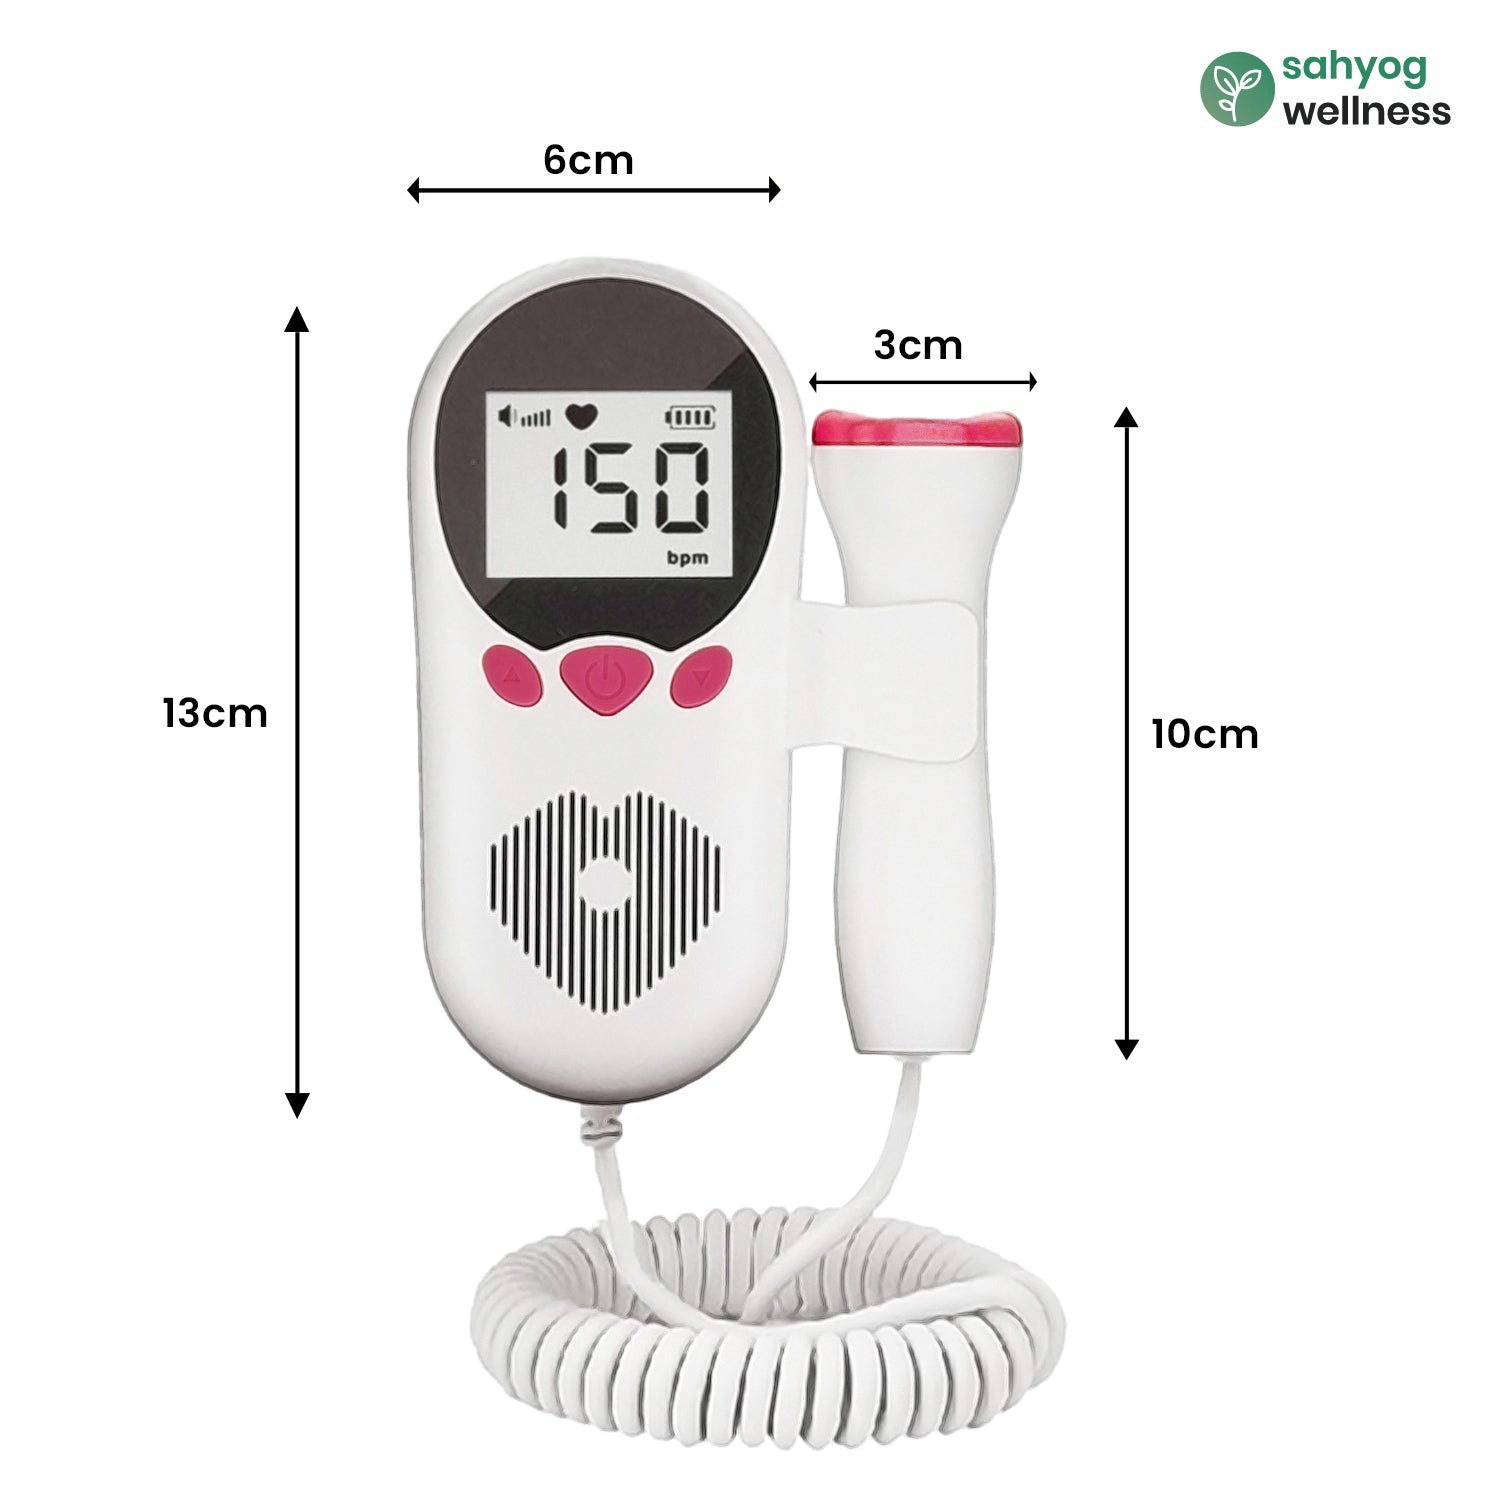 Sahyog Wellness Fetal Doppler with Battery & Built-in Speaker for Feta